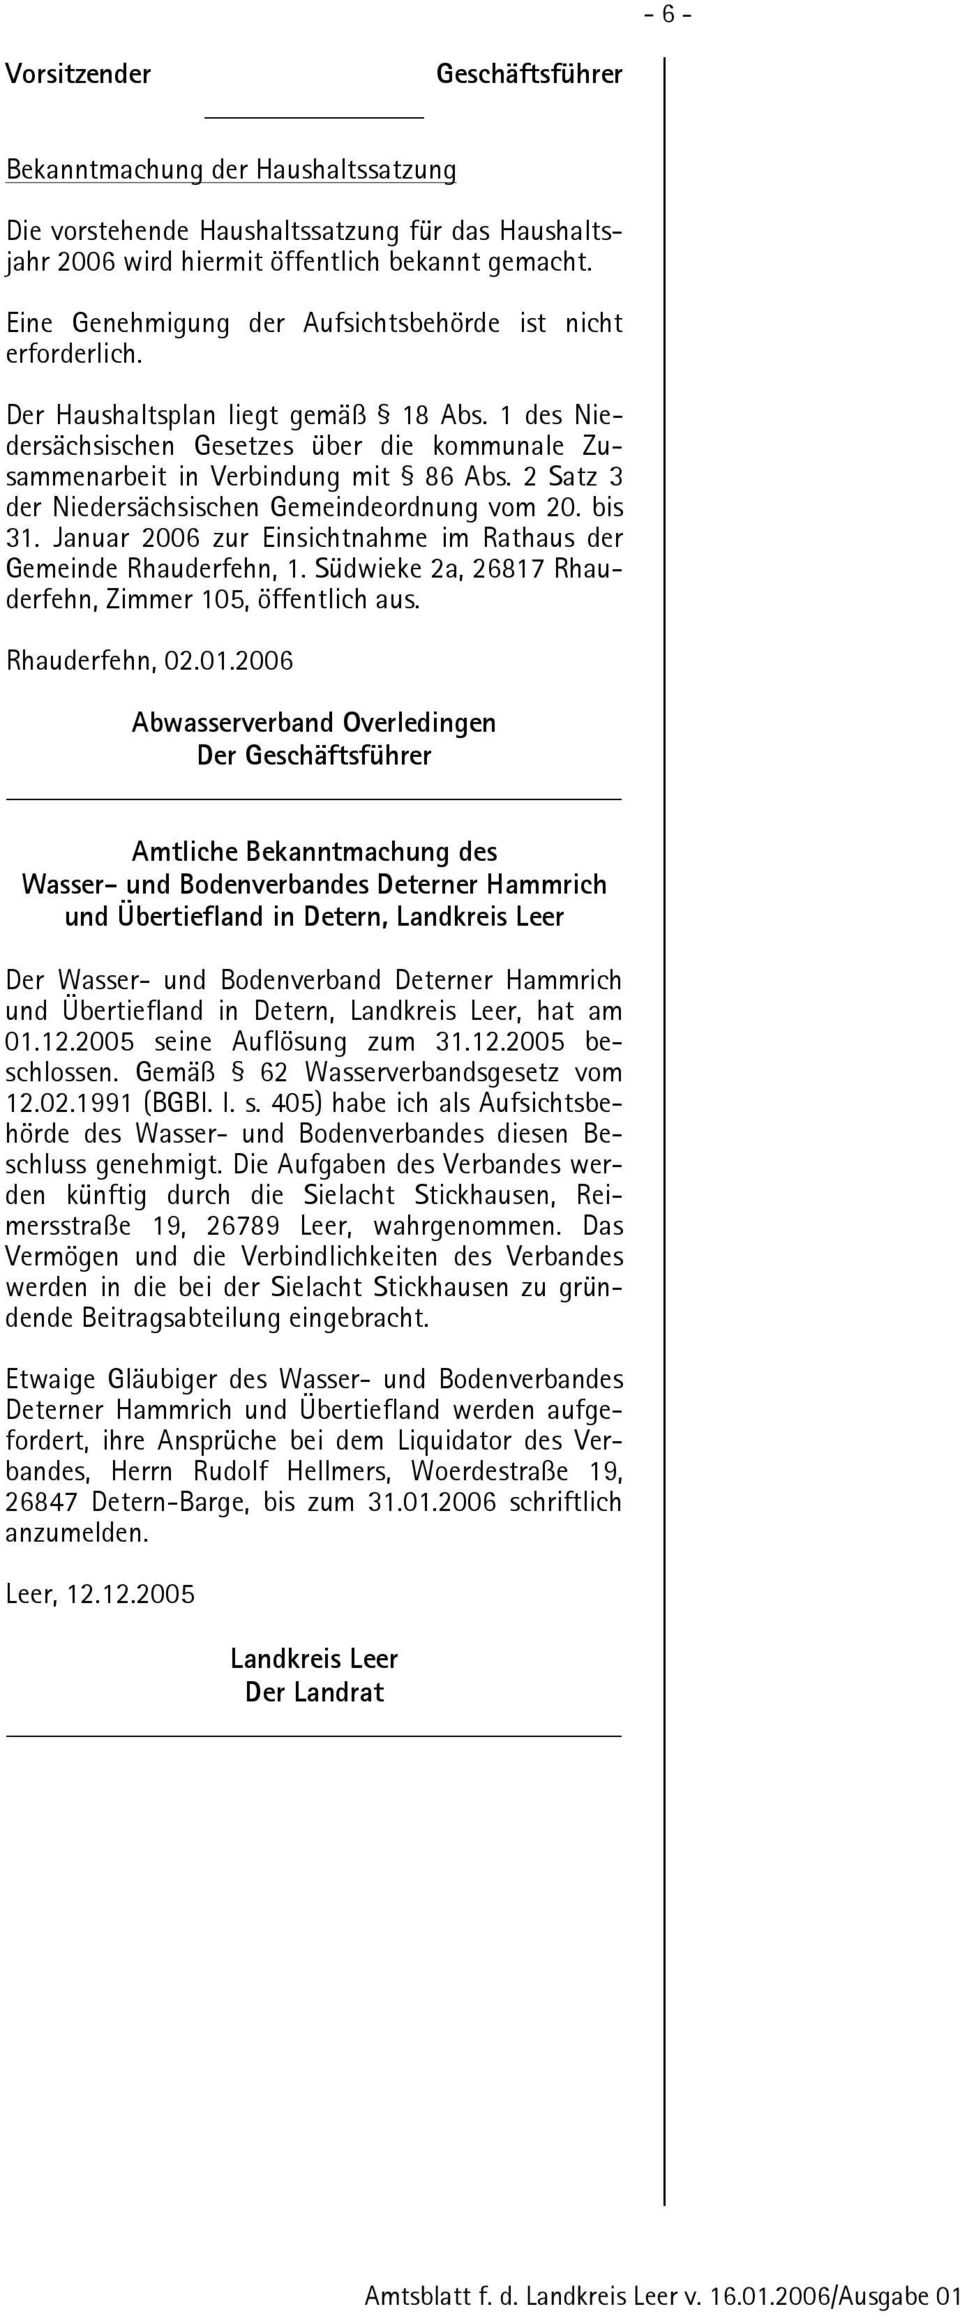 2 Satz 3 der Niedersächsischen Gemeindeordnung vom 20. bis 31. Januar 2006 zur Einsichtnahme im Rathaus der Gemeinde Rhauderfehn, 1. Südwieke 2a, 26817 Rhauderfehn, Zimmer 105, öffentlich aus.